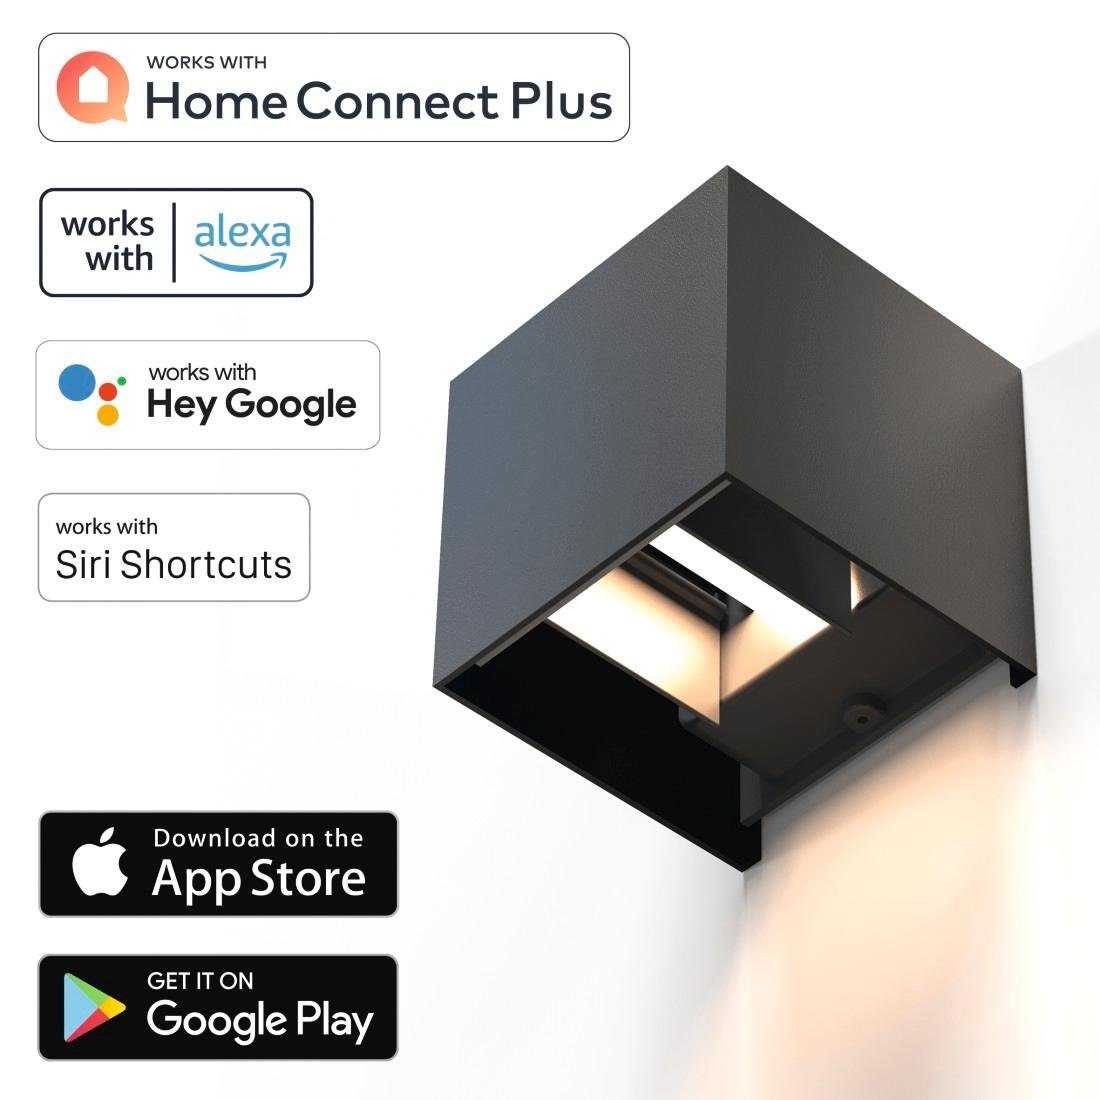 Hama LED Wandleuchte Amazon LED Tageslichtweiß, IP Smart Lizenziert Dimmer, von/durch: Wandleuchte, Außenlampe WLAN Wandlampe innen/außen Warmweiß, für Farbwechsel, 44, schwarz Home